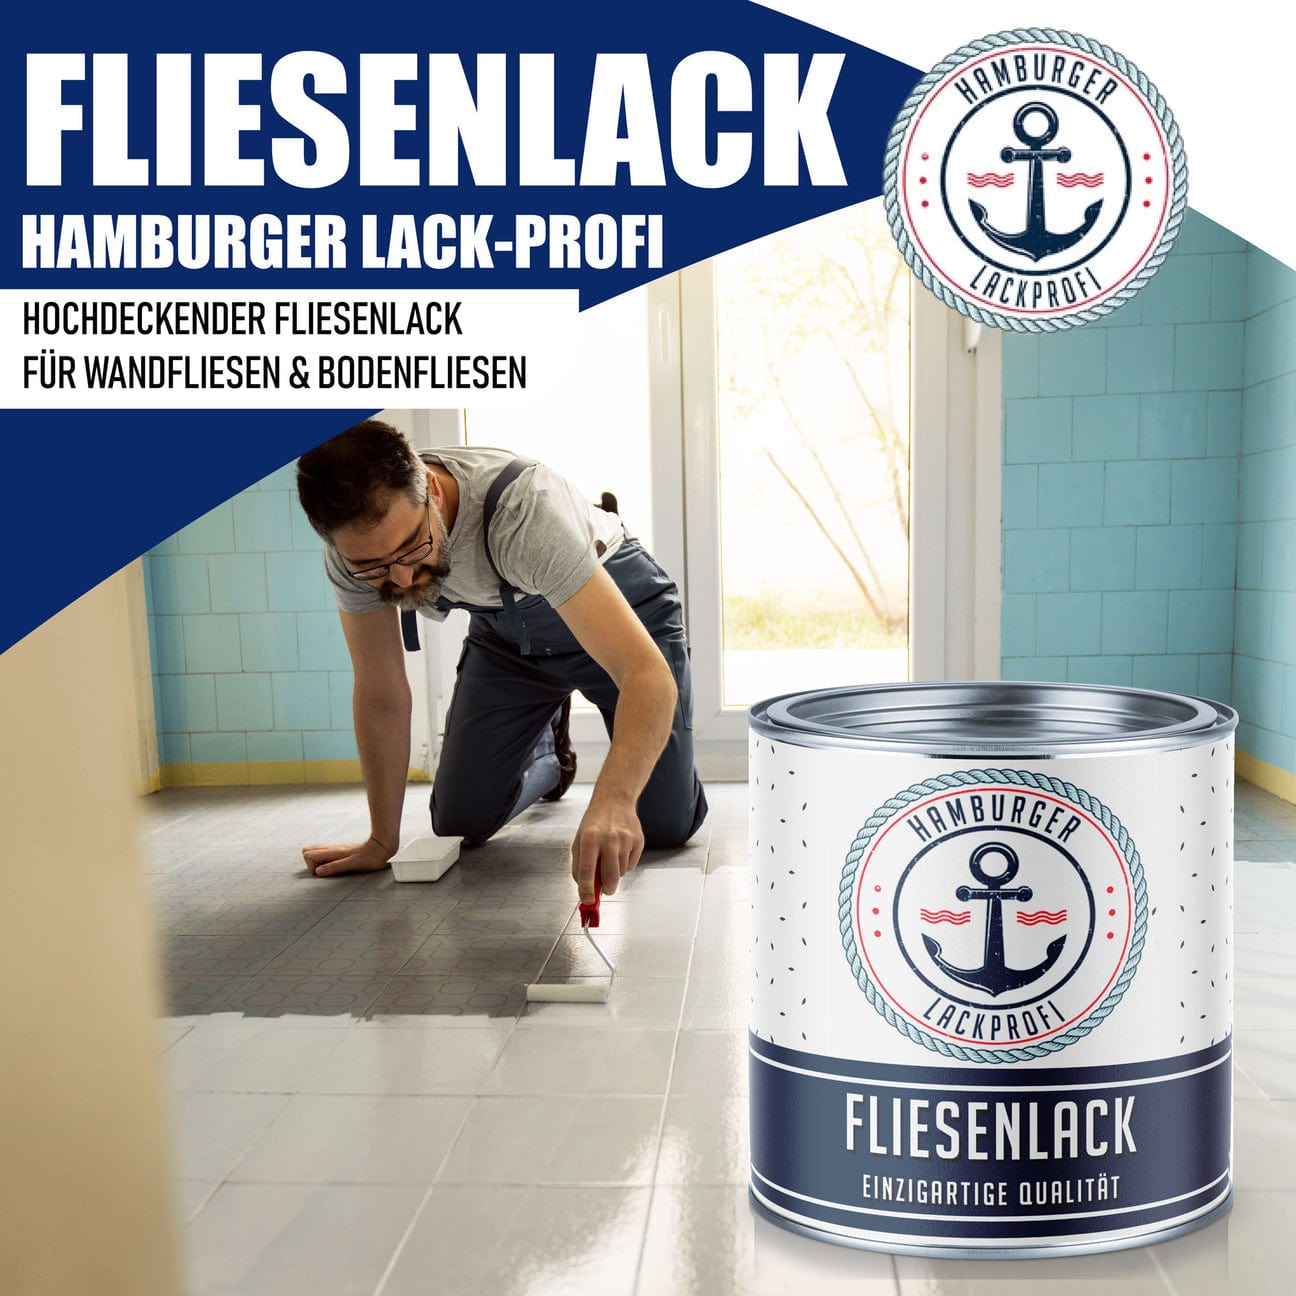 Hamburger Lack-Profi Hamburger Lack-Profi Fliesenlack Cremeweiß RAL 9001 - hochdeckende Fliesenfarbe Schwarz